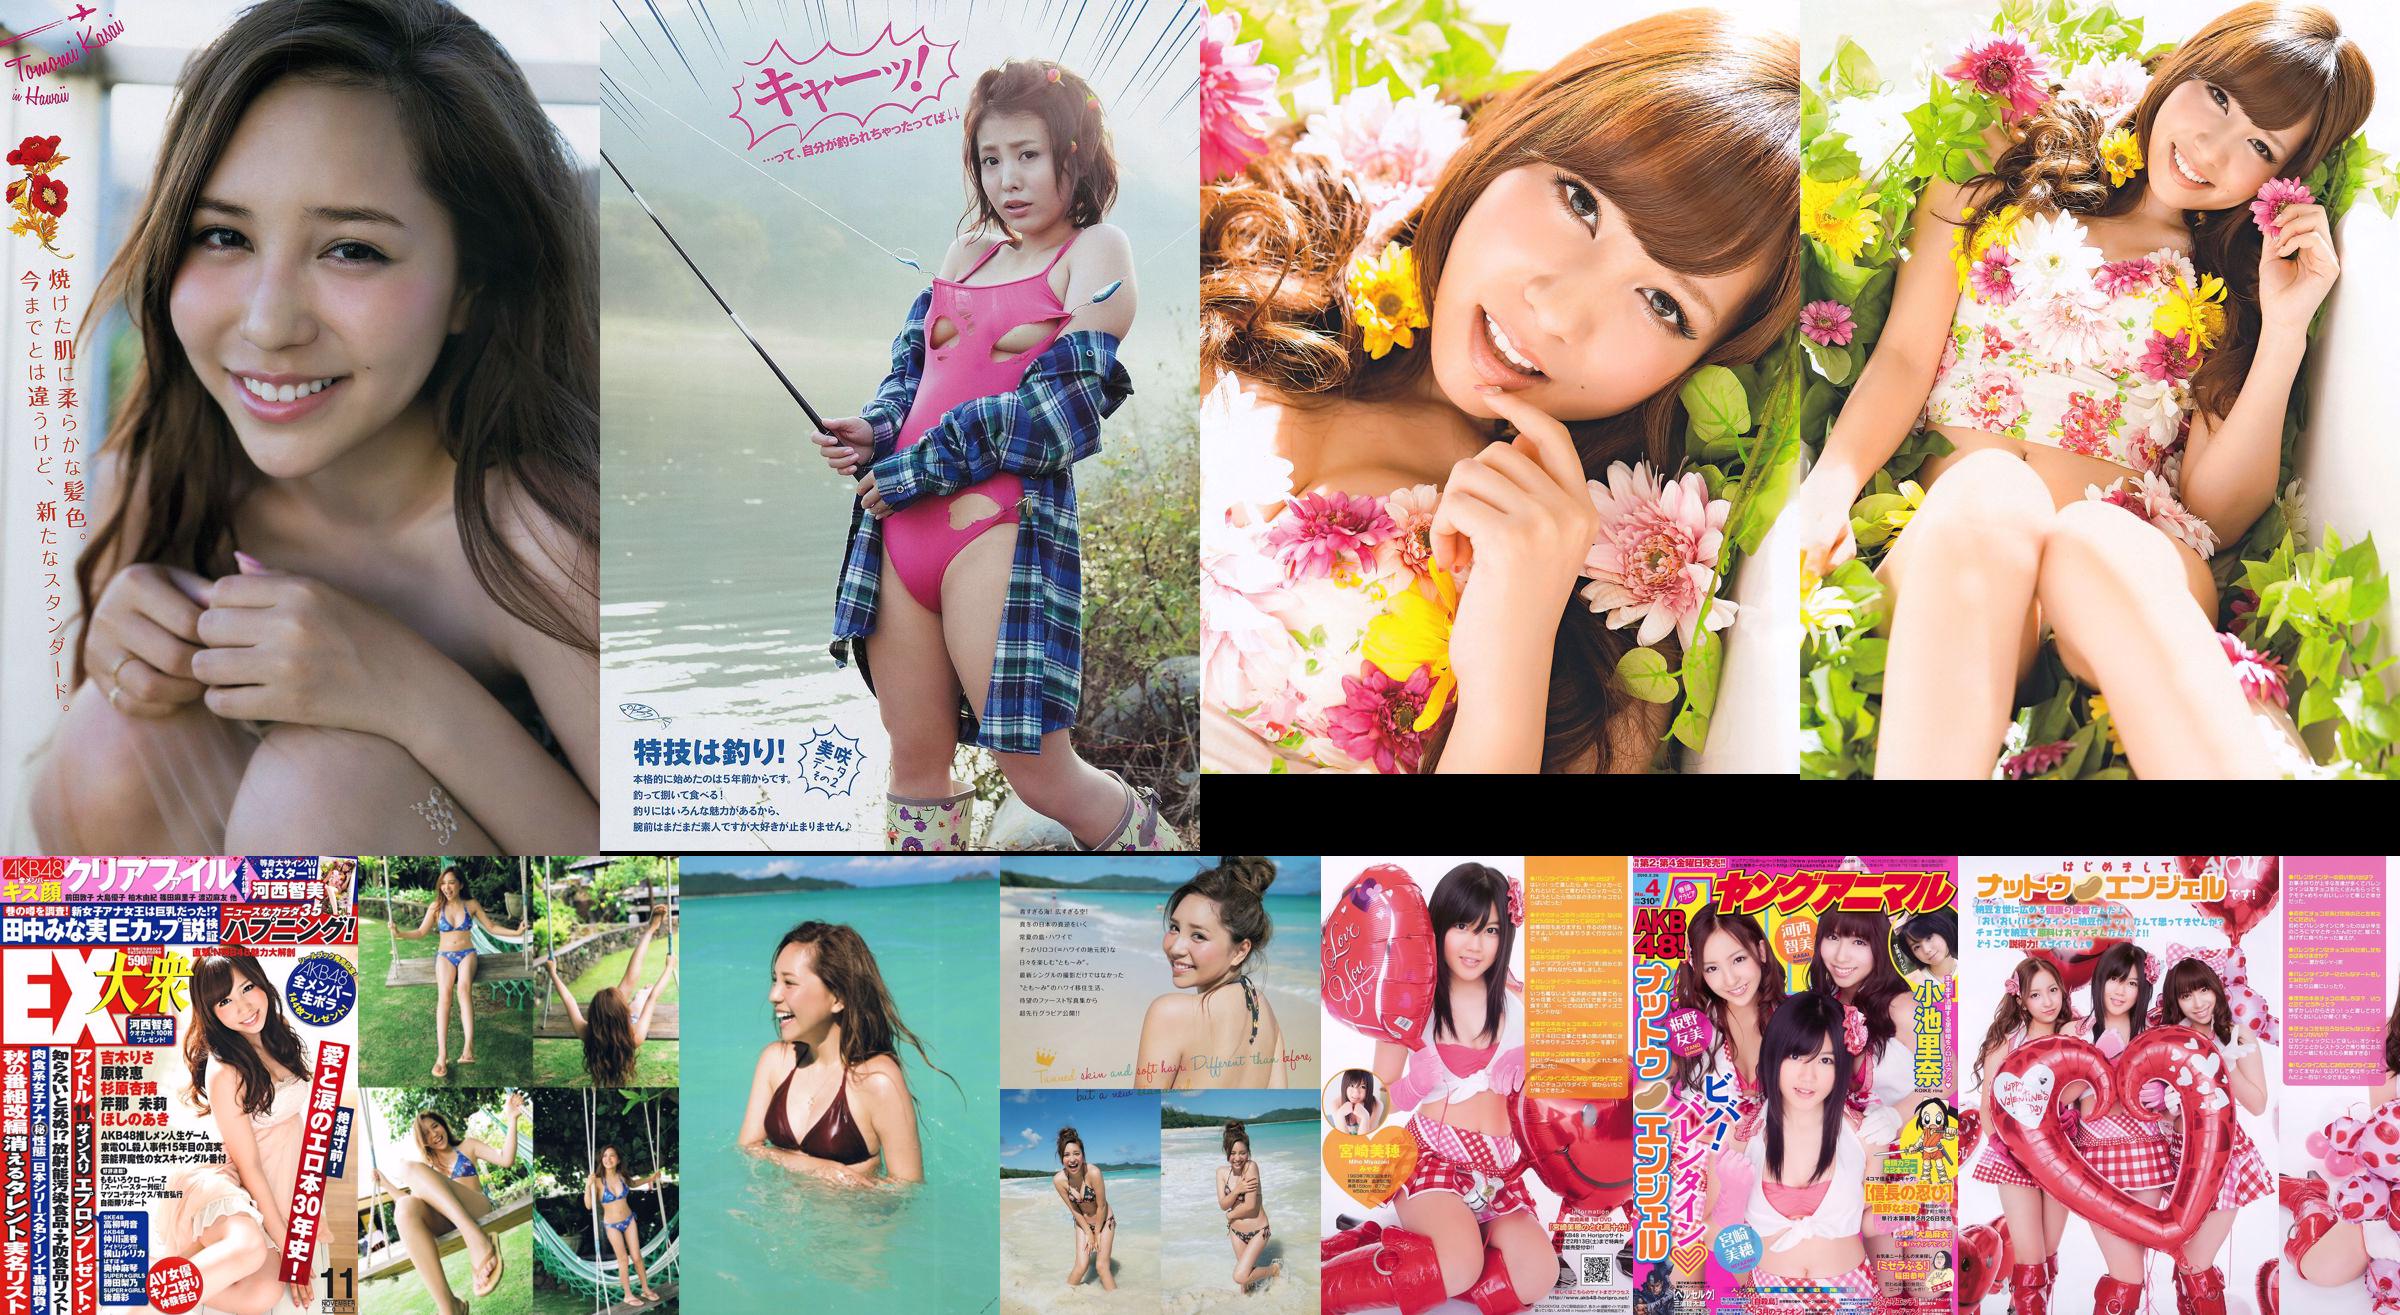 [Young Magazine] Tomomi Kasai Misaki Yumoto 2014 nr 08 Zdjęcie No.20e33d Strona 1